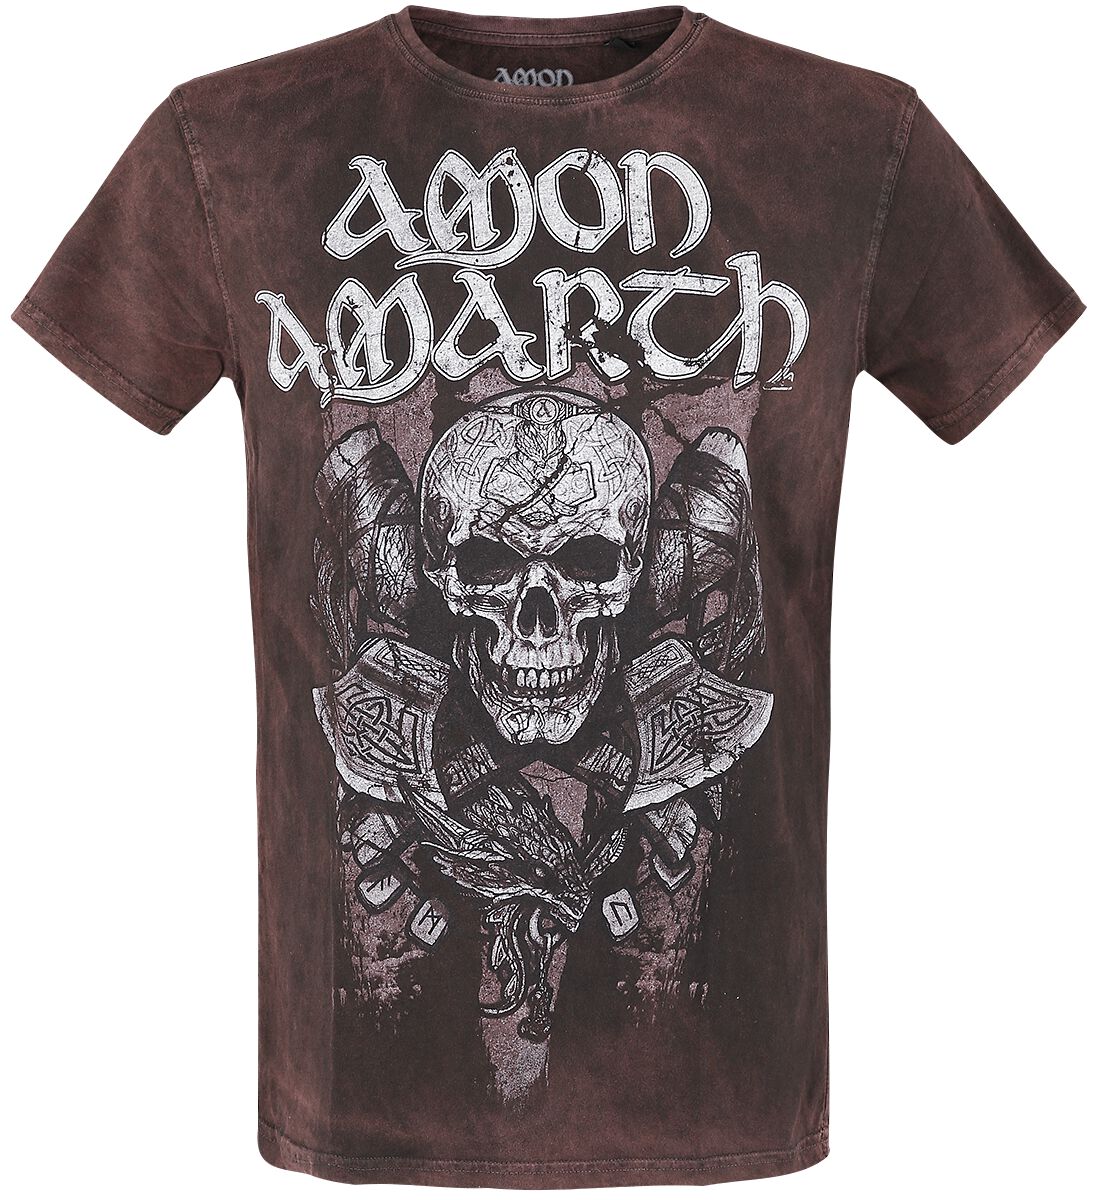 Amon Amarth T-Shirt - Carved Skull - S bis L - für Männer - Größe S - braun  - EMP exklusives Merchandise!